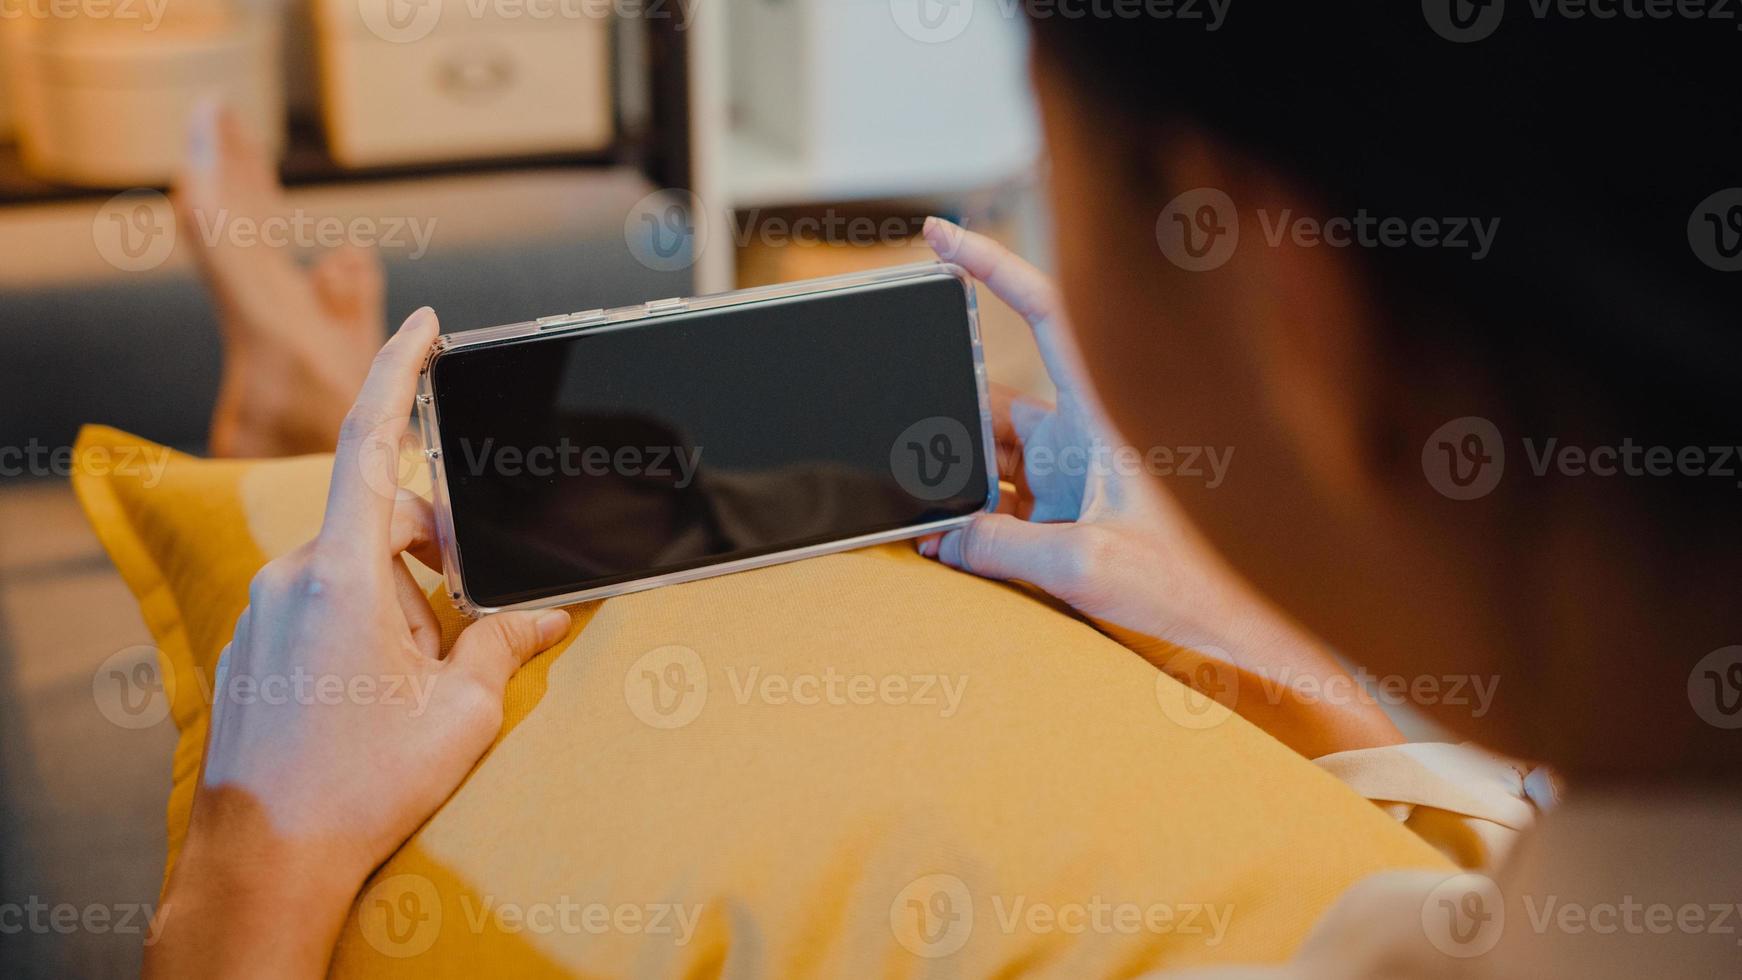 jovem asiática usar telefone inteligente com simulação de tela preta em branco para texto de publicidade, enquanto descansa no sofá na sala de estar em casa à noite moderna. tecnologia chroma key, conceito de design de marketing. foto